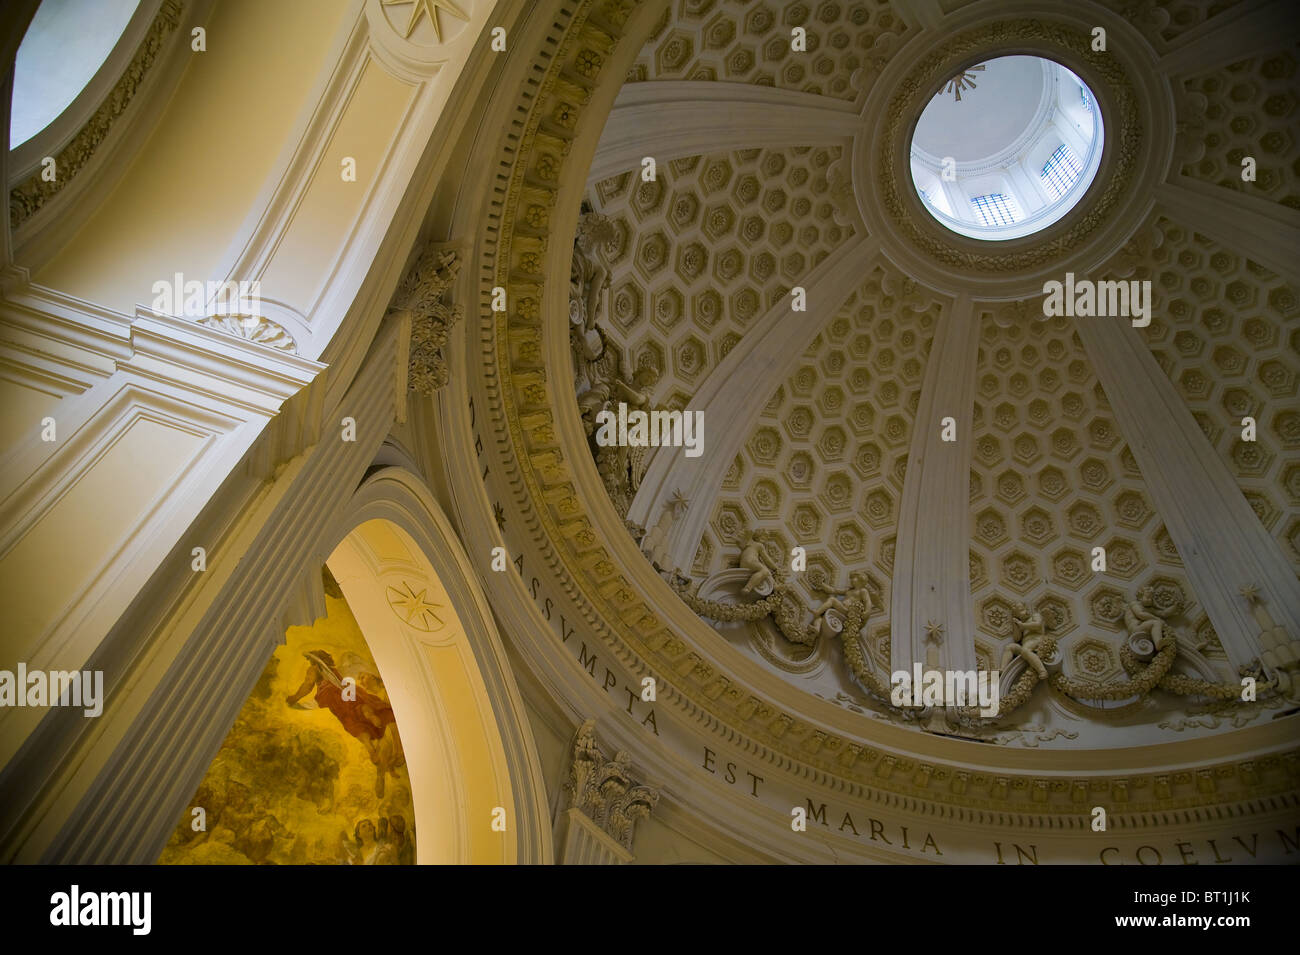 Interior dome of Church 'Collegiata di Santa Maria Assunta in Cielo' Ariccia Italy Stock Photo